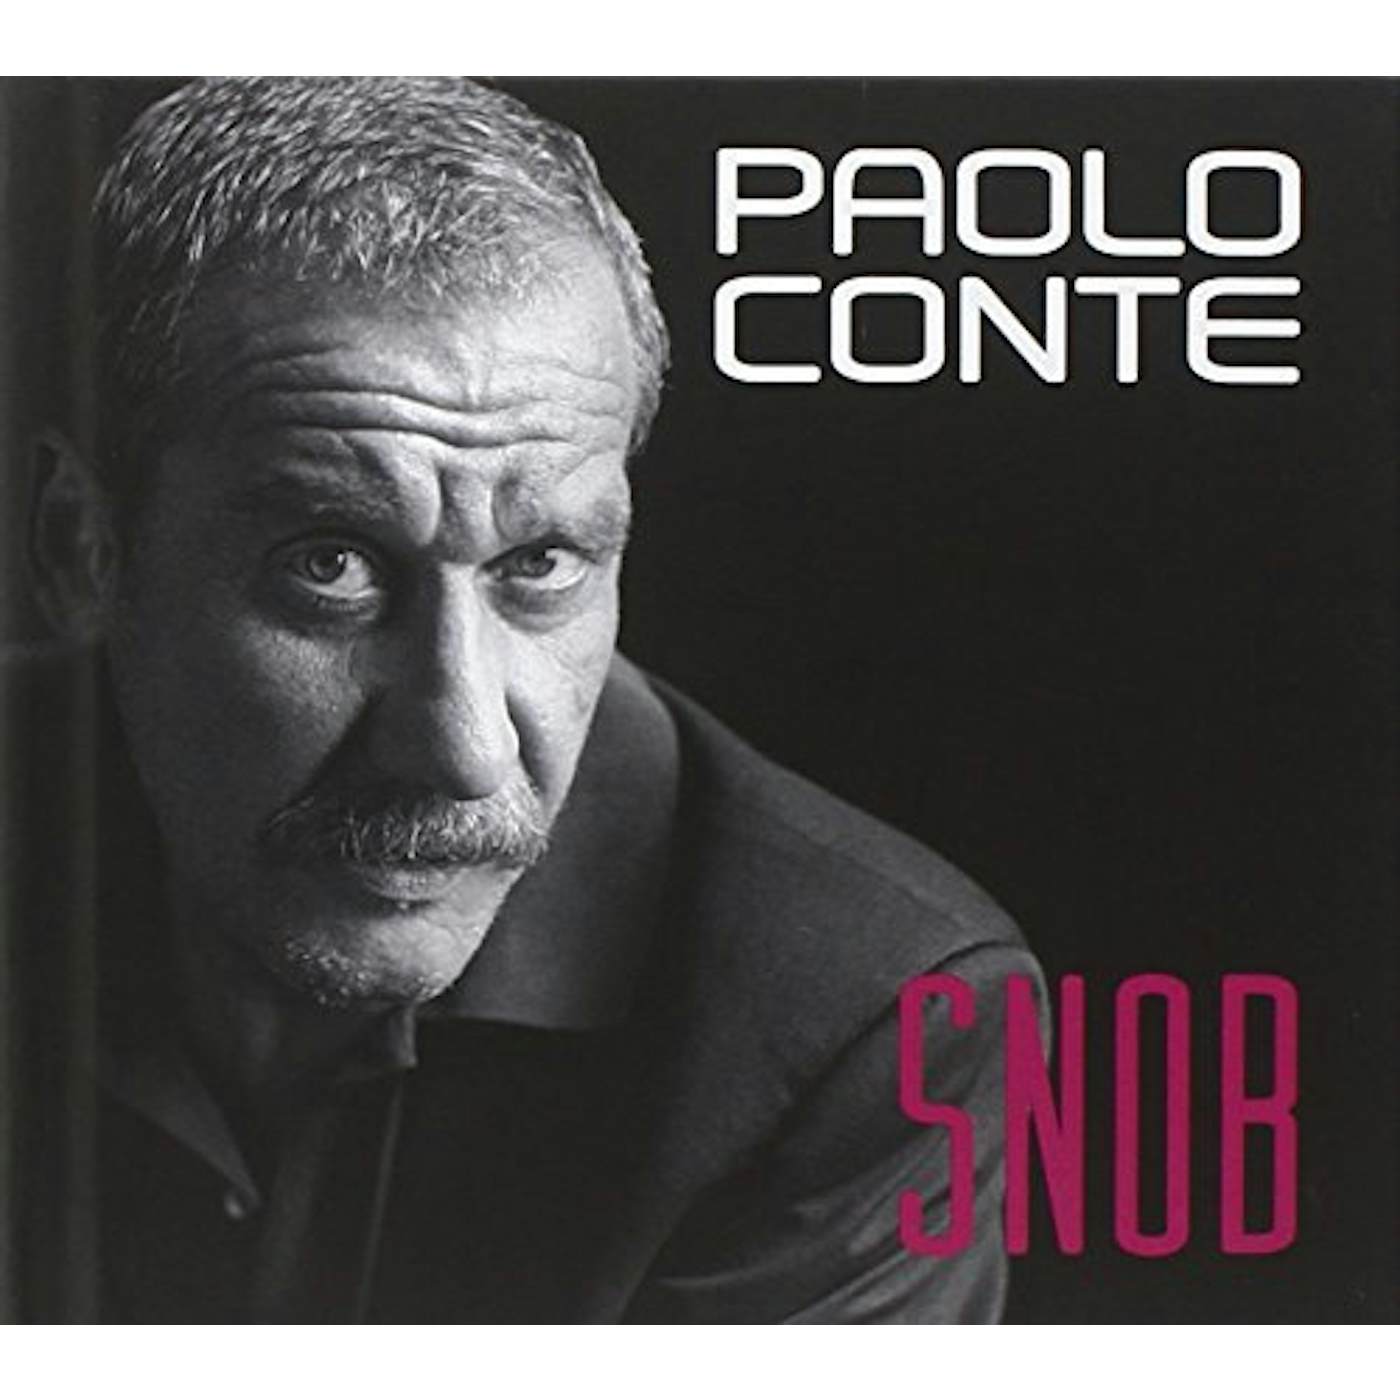 Paolo Conte SNOB CD